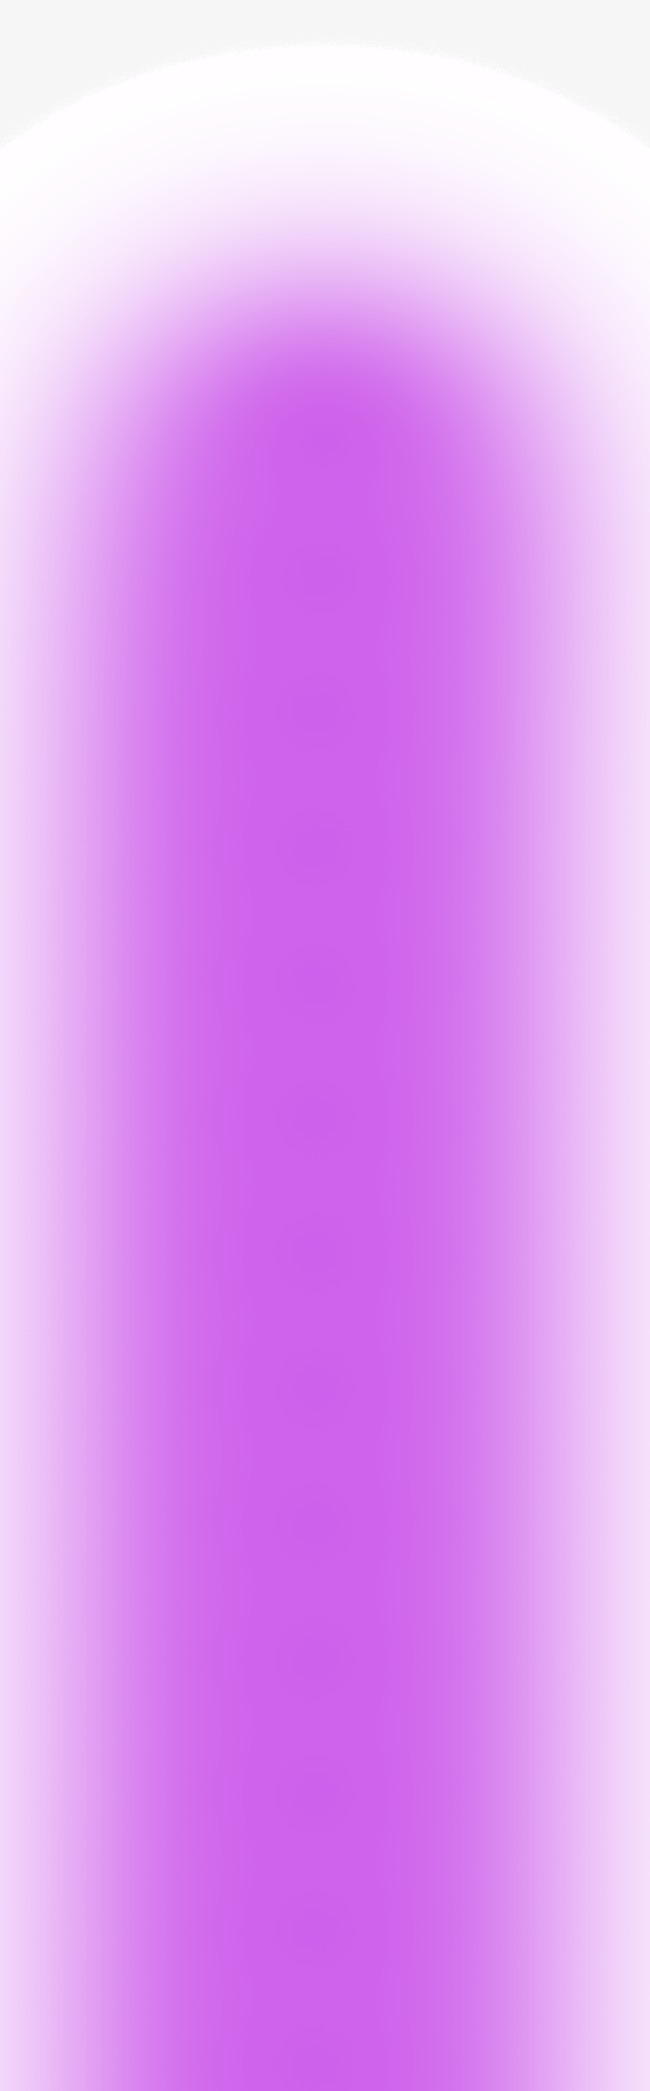 紫白渐变背景图片